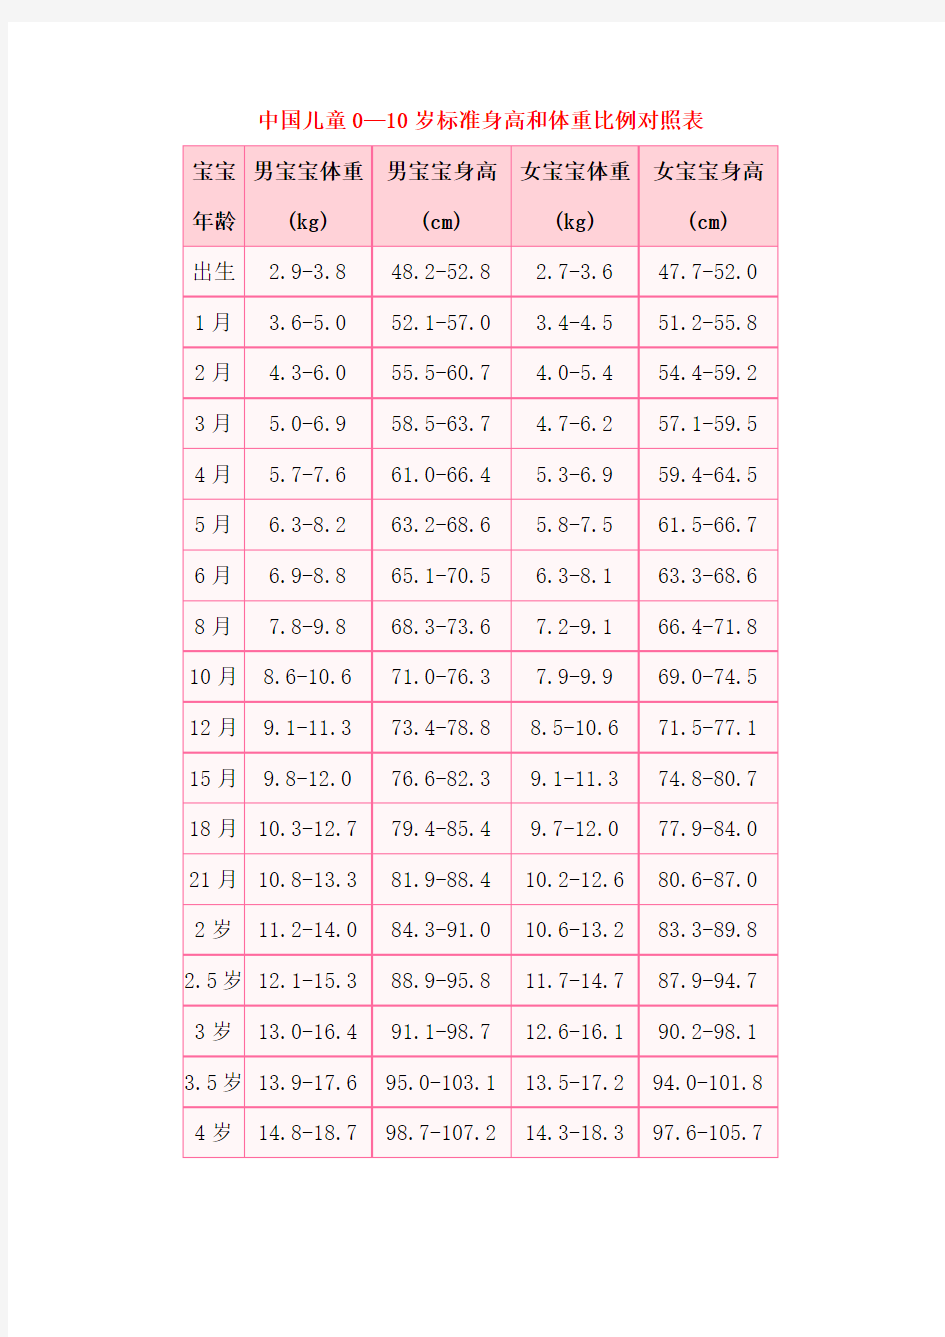 中国儿童0-10岁标准身高和体重比例对照表